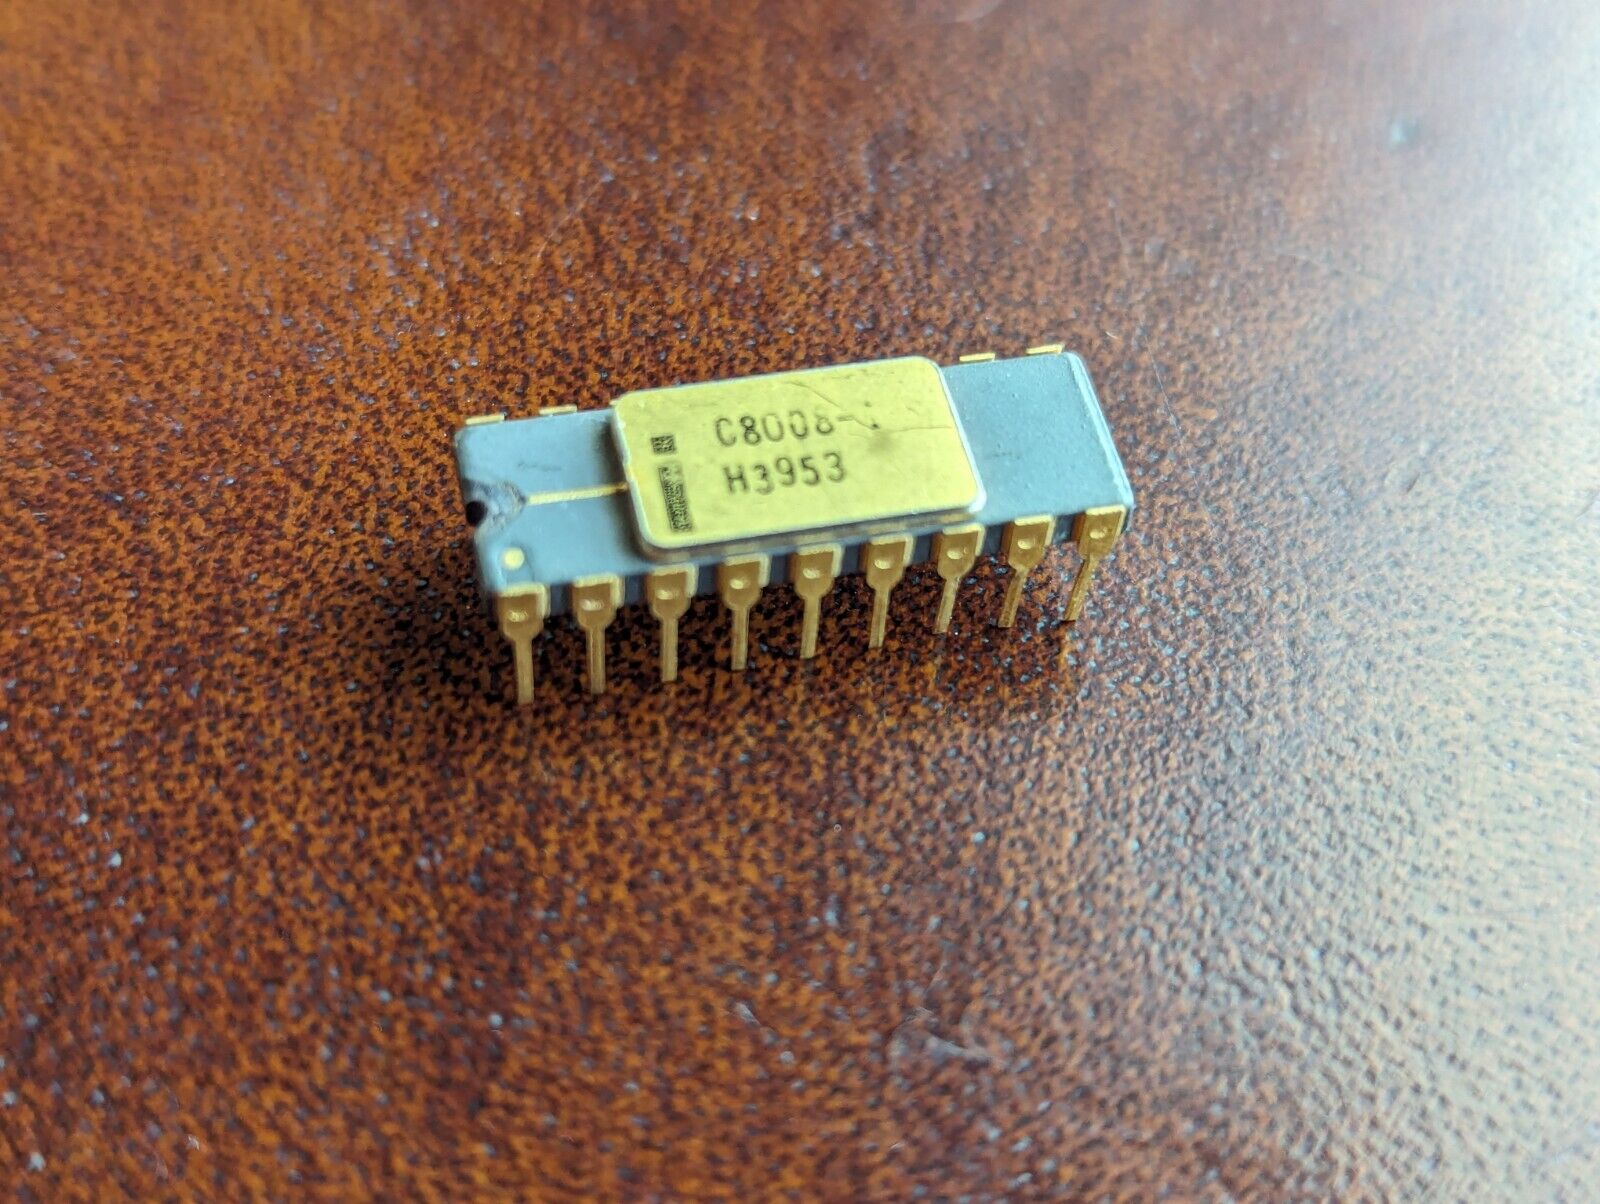 Vintage Intel C8008 CPU with Ground Strap